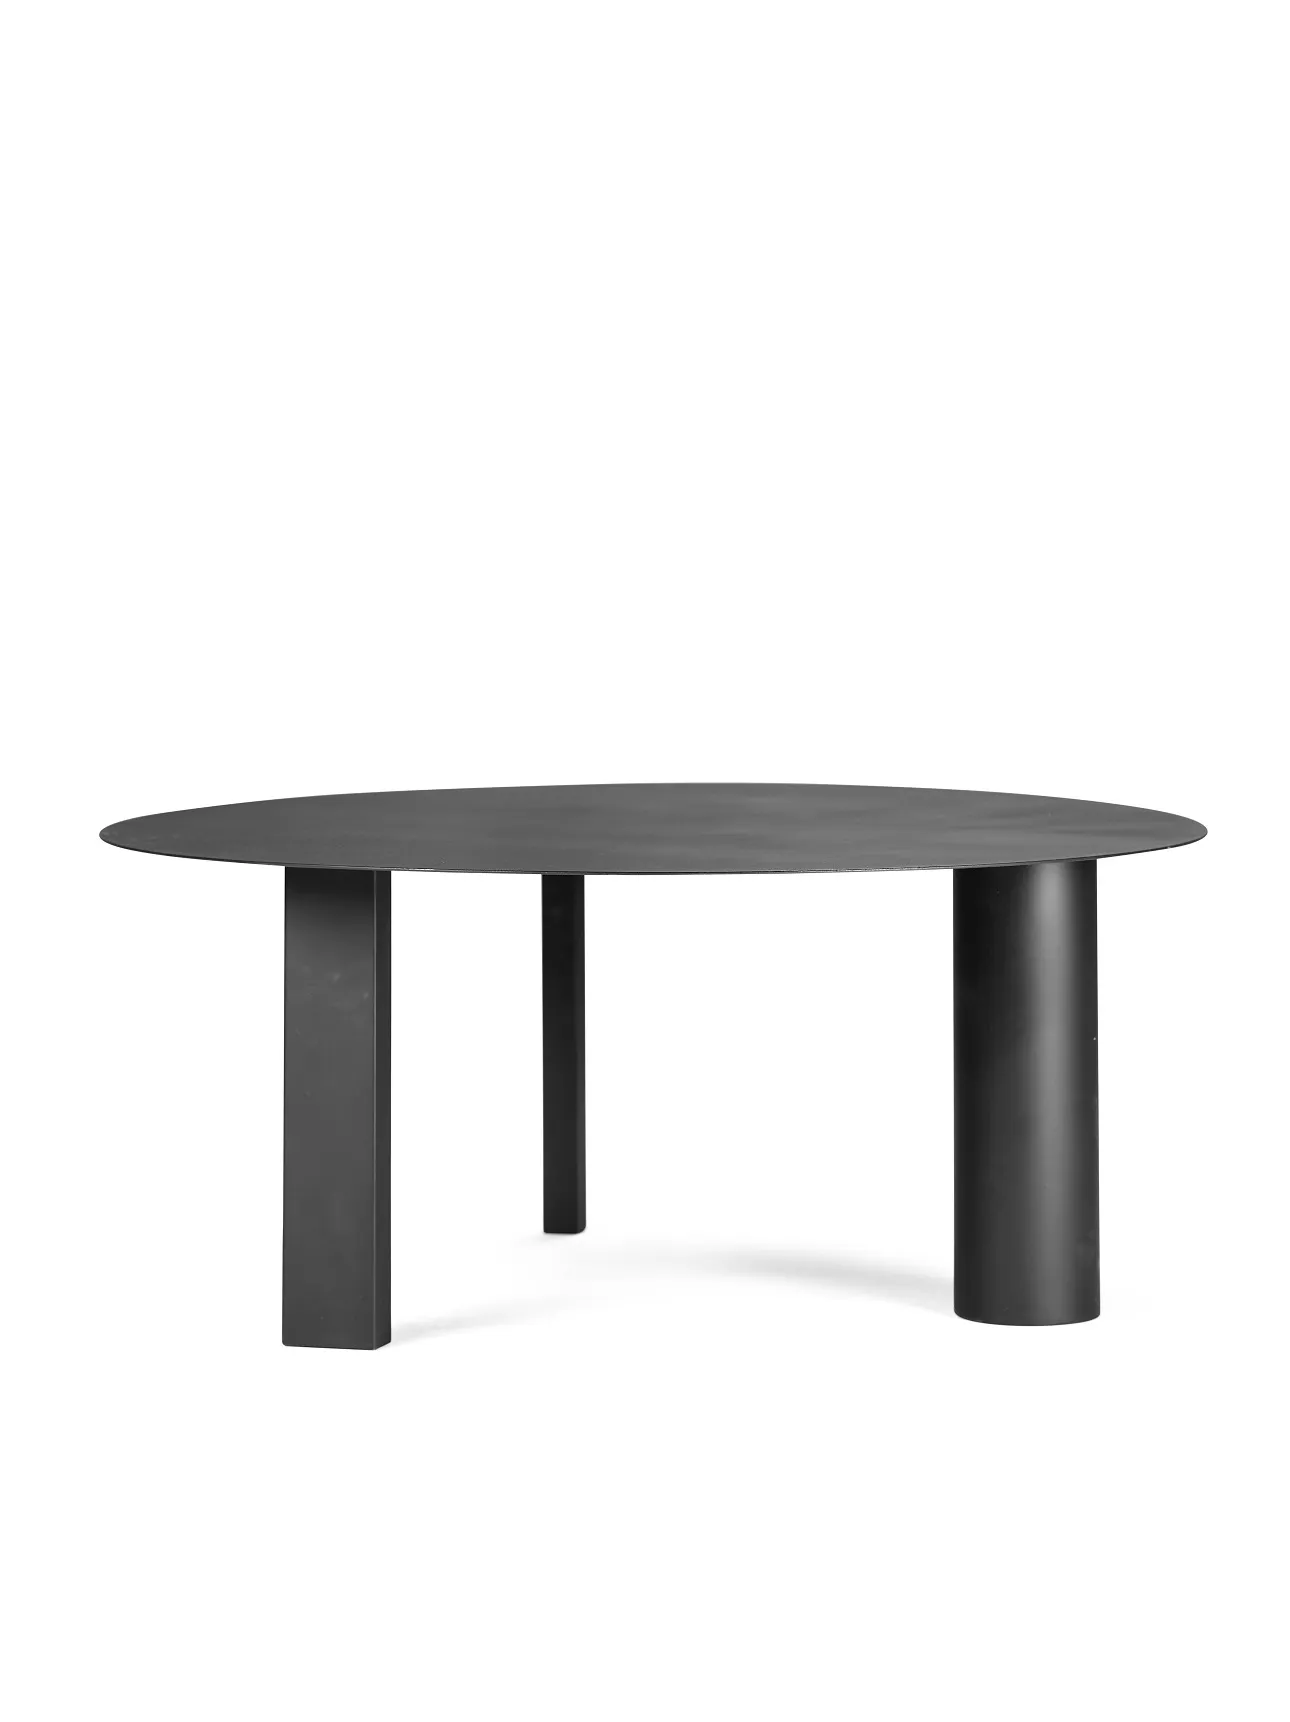 Side Table L Black Tubes L 70 W 70 H 29.5 CM Antonino Sciortino by Serax